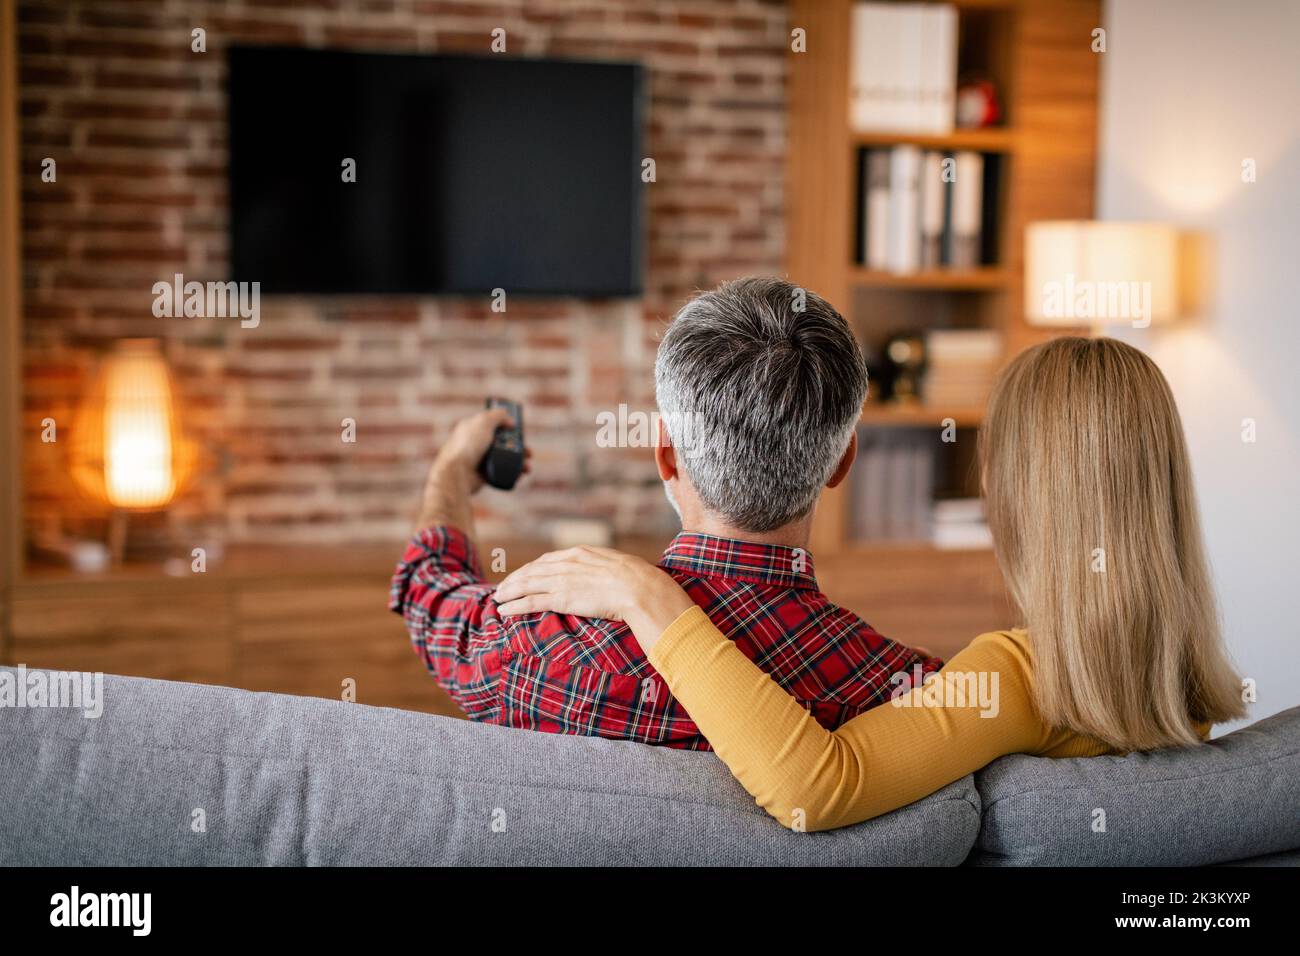 Ruhige ältere europäische Familie mit Fernbedienung entspannend, genießen Sie Freizeit mit tv mit leerem Bildschirm Stockfoto